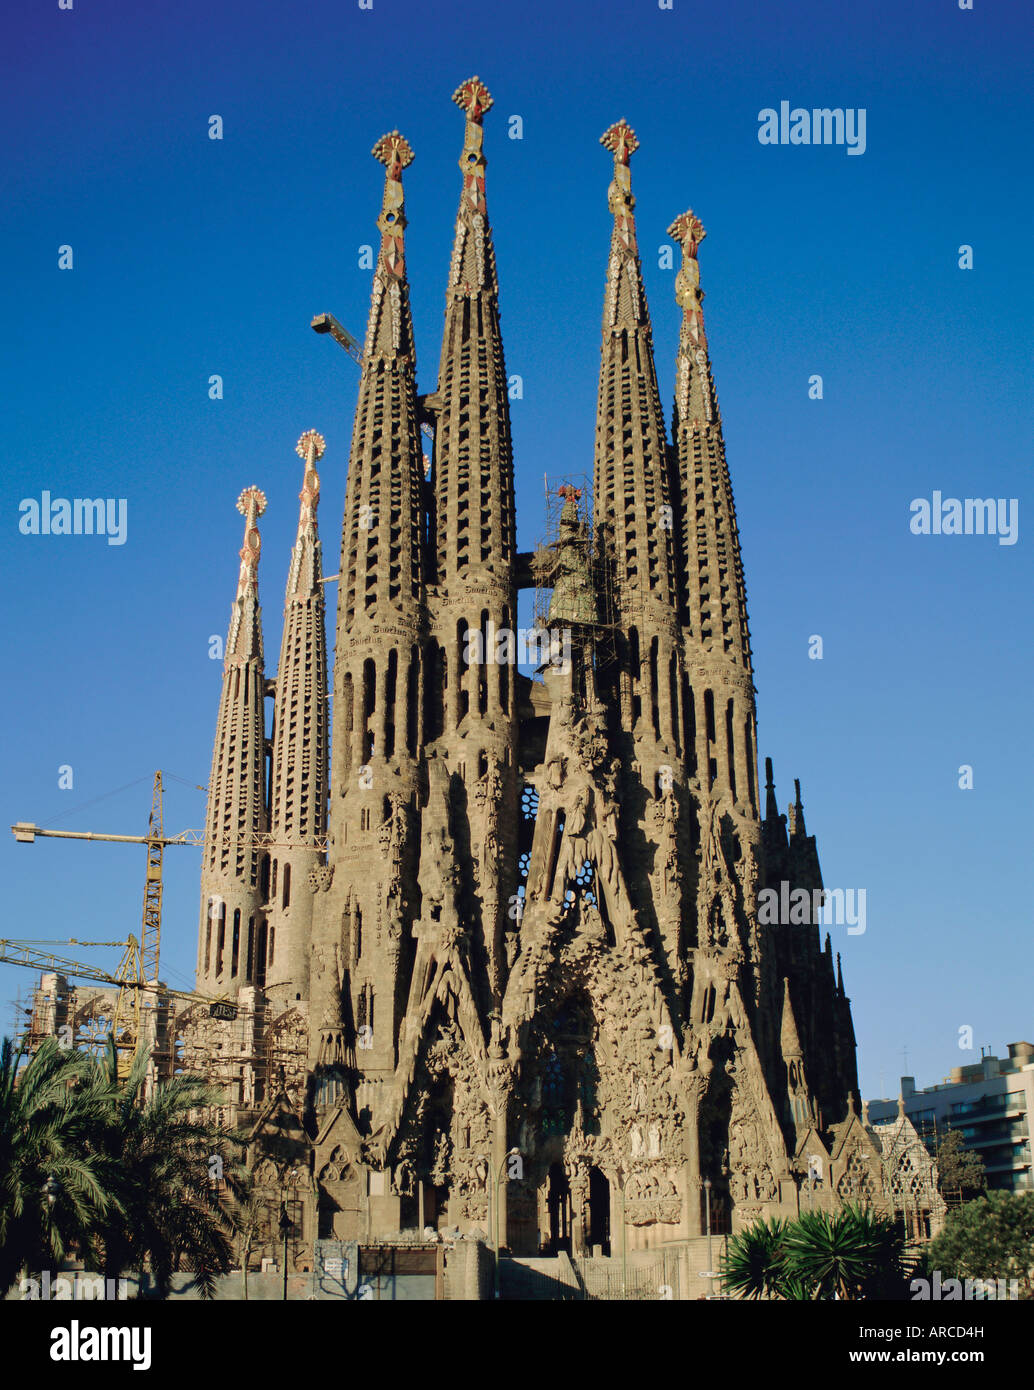 La Sagrada Familia di Gaudi, cattedrale di Barcellona e della Catalogna (Cataluña) (Catalunya), Spagna, Europa Foto Stock